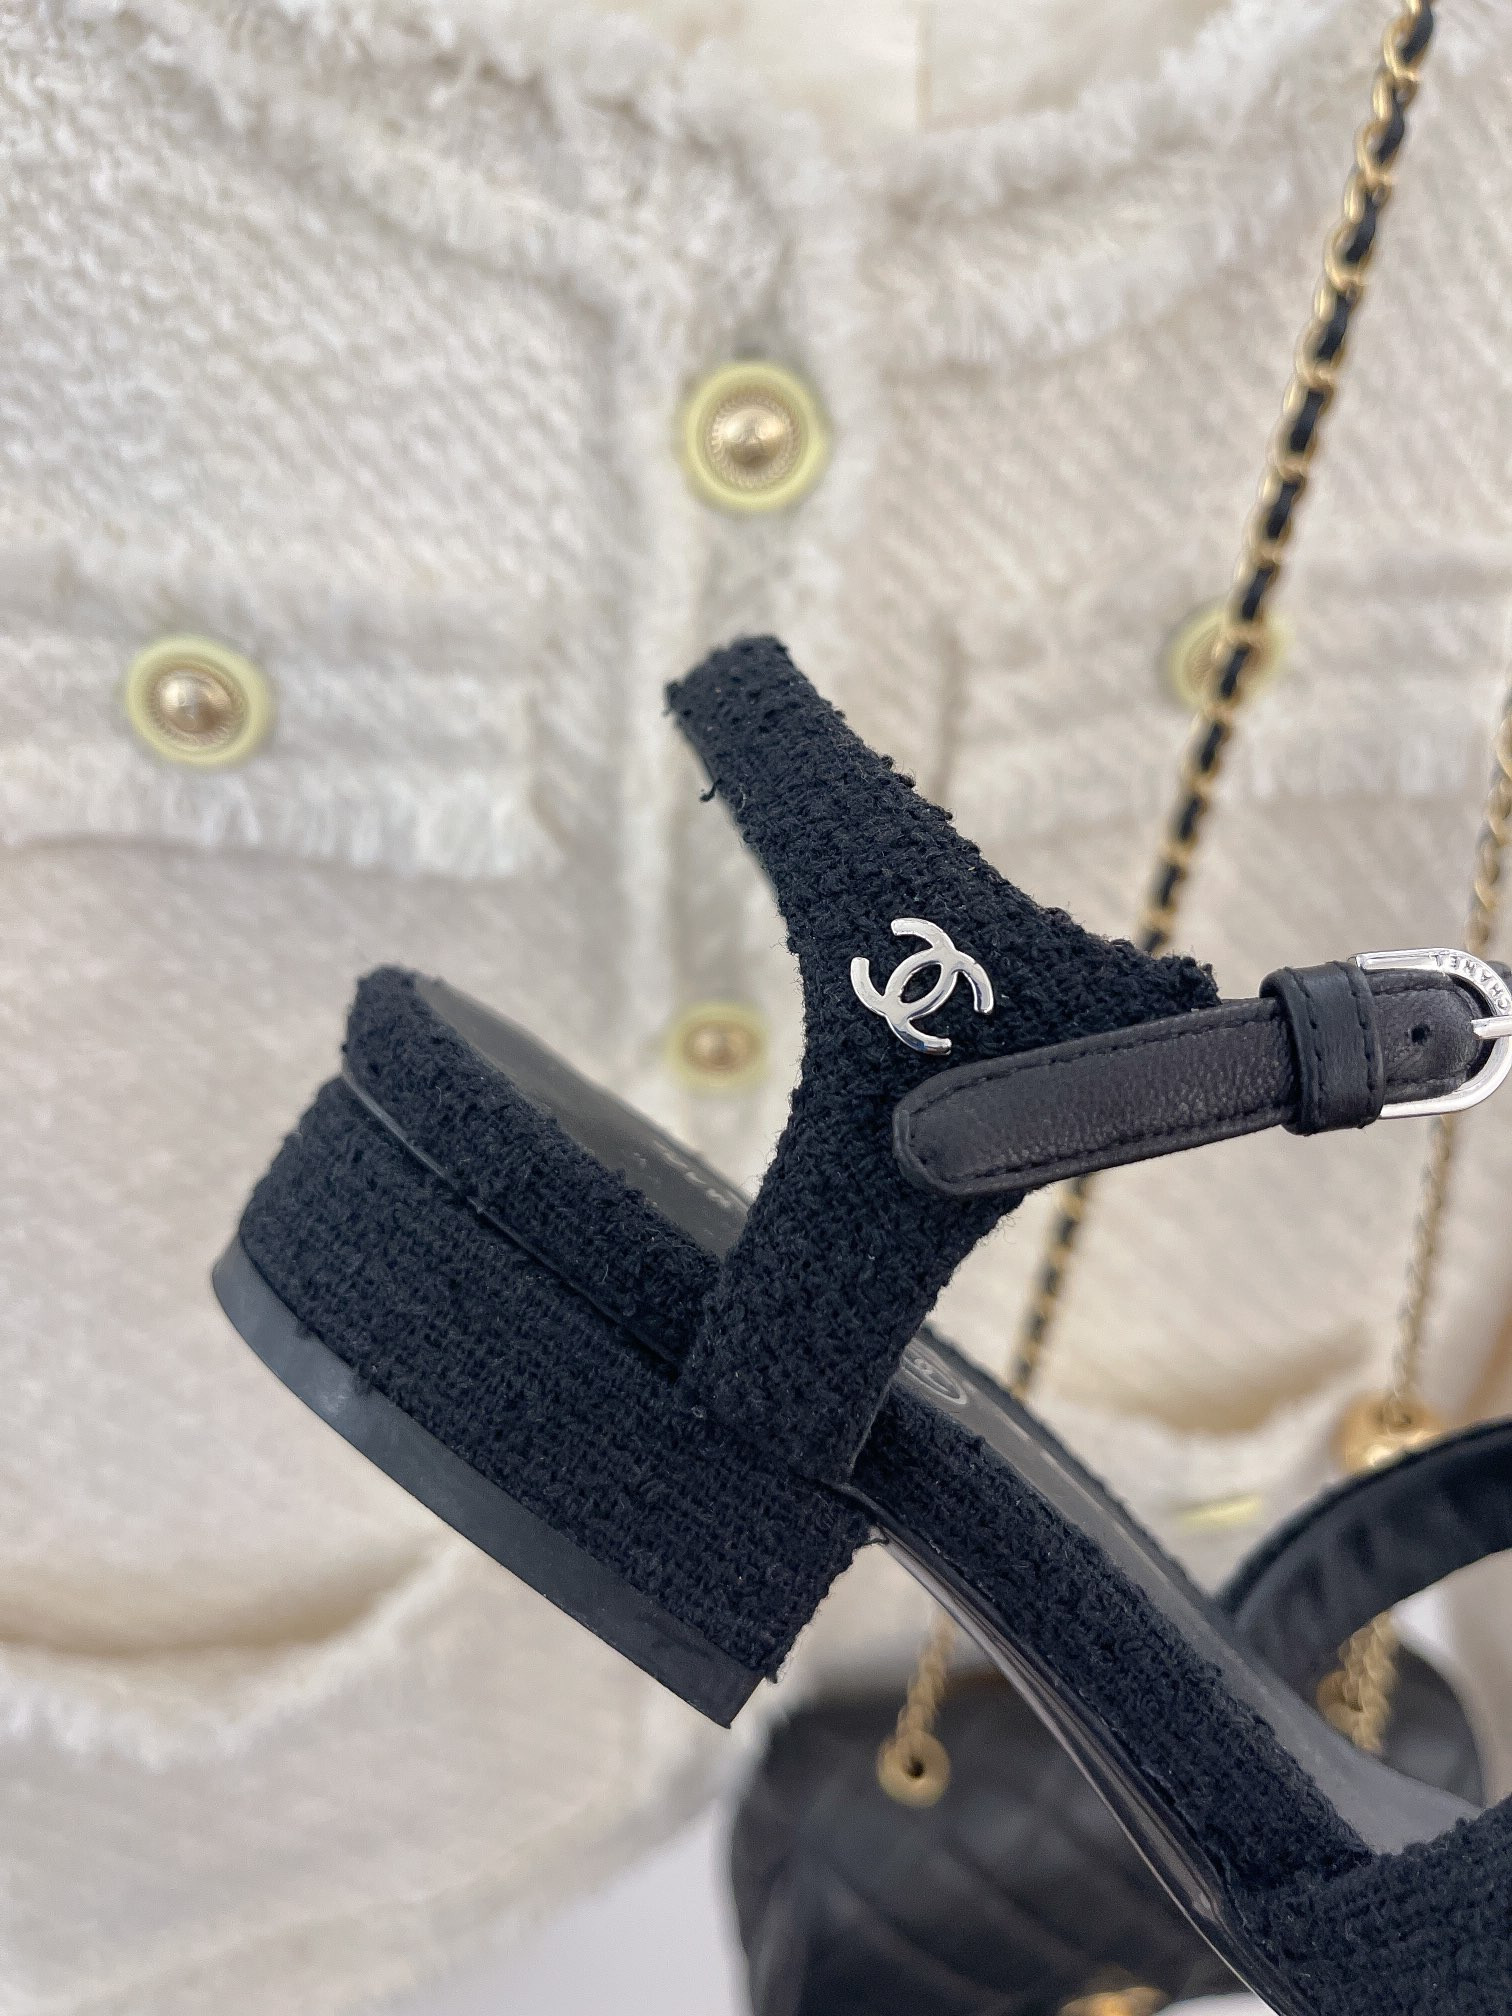 Giày Chanel Siêu Cấp Màu Đen Đính Logo Màu Vàng Đủ Size